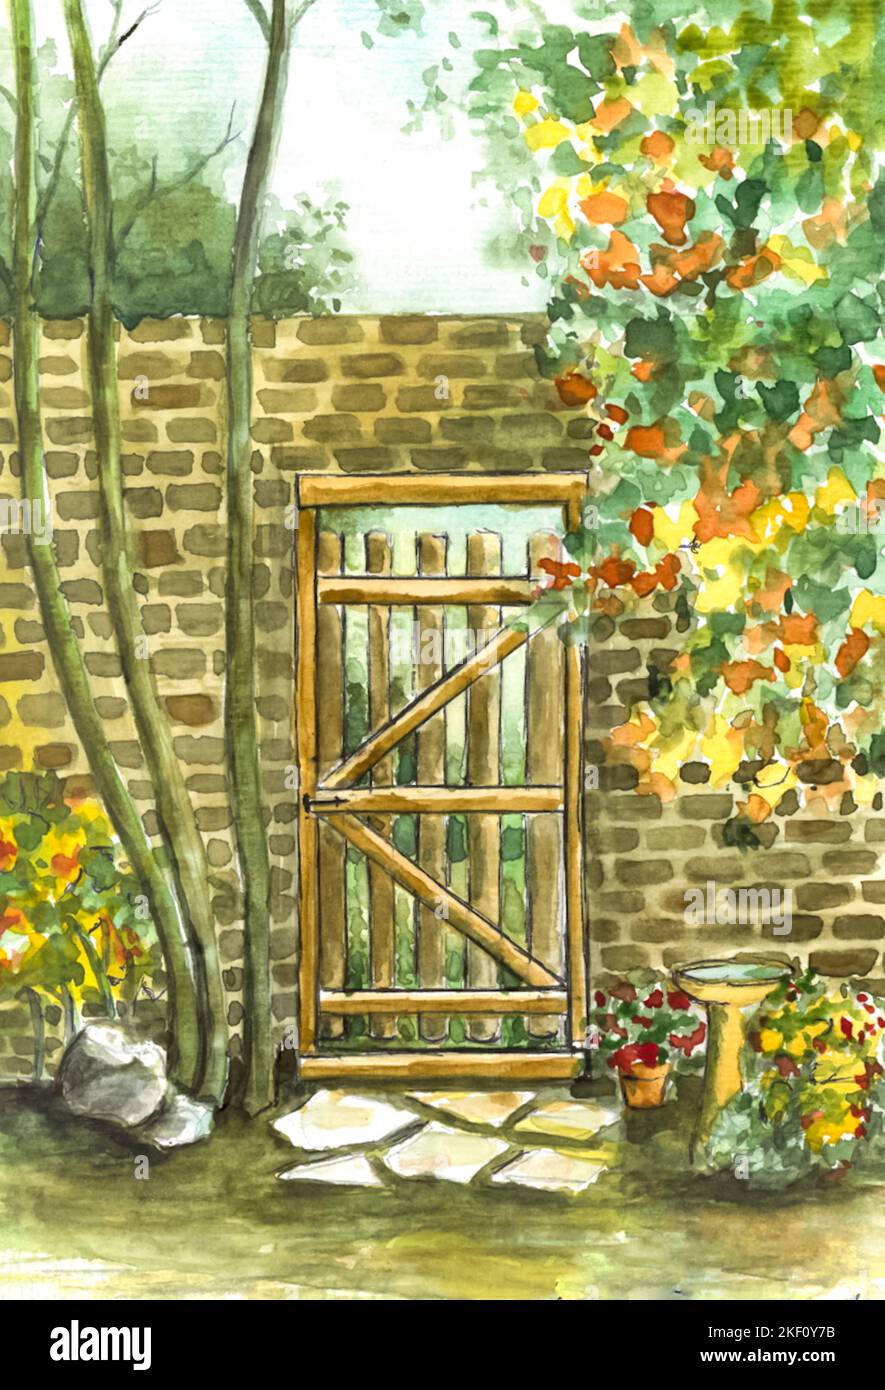 Porte de jardin en bois. Peinture aquarelle de la porte du jardin et du mur de briques. Peint par le photographe. Banque D'Images